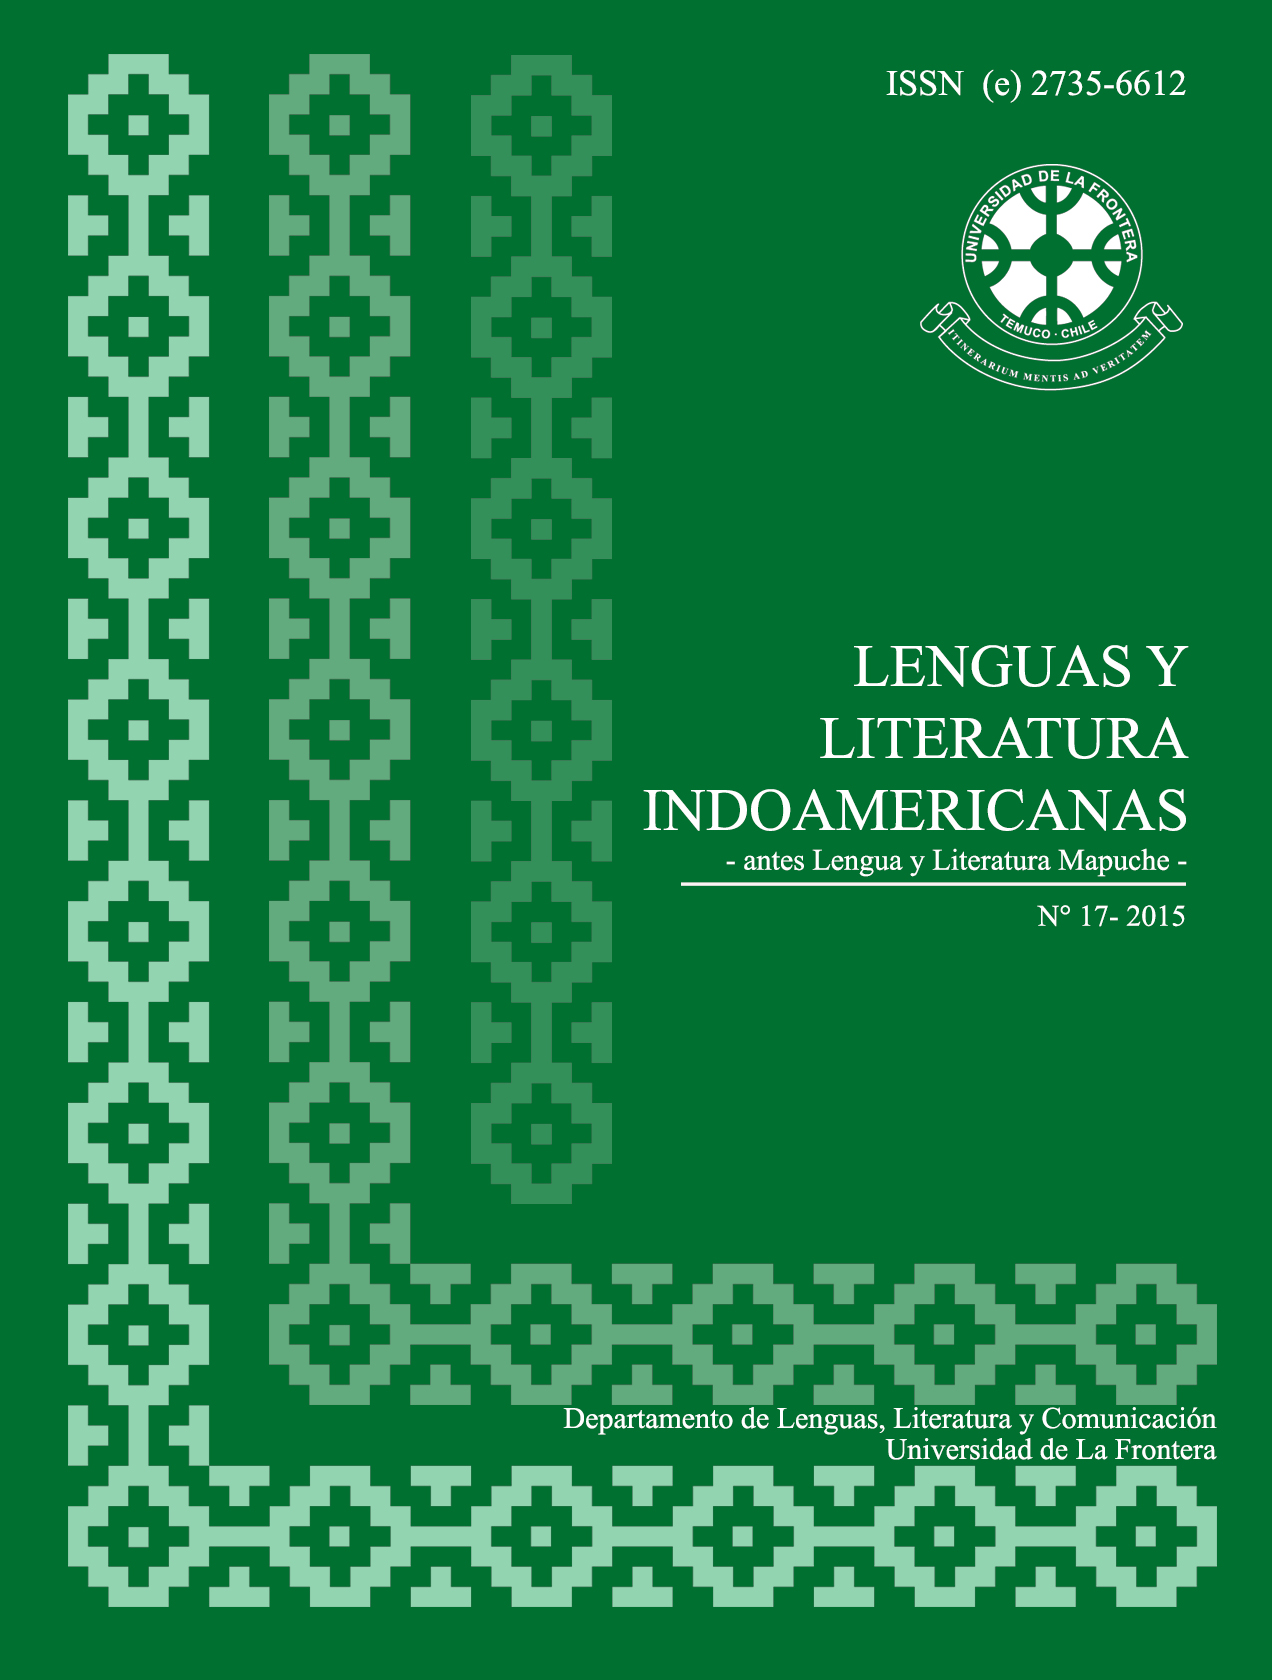 					Ver Vol. 17 Núm. 1 (2015): Revista de Lenguas y Literatura Indoamericanas (RLLI)
				